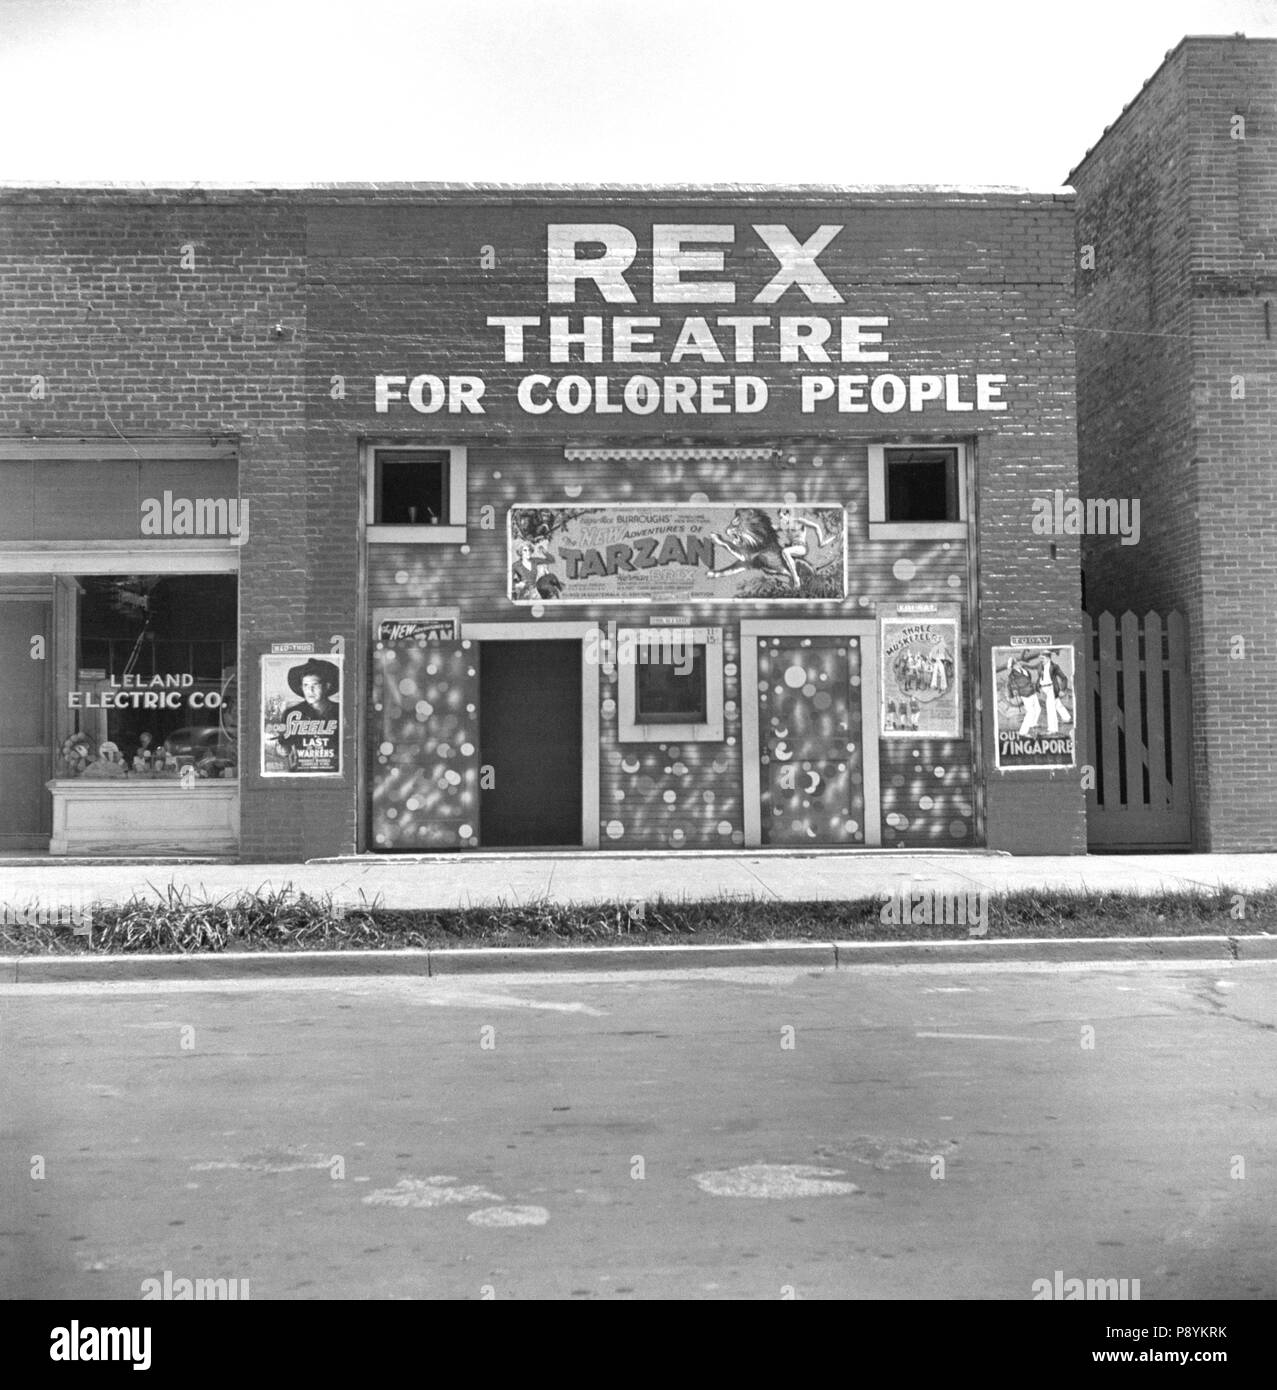 Teatro con il segno "Rex teatro per la gente colorata', Leland, Mississippi, STATI UNITI D'AMERICA, Dorothea Lange, Farm Security Administration, Giugno1937 Foto Stock